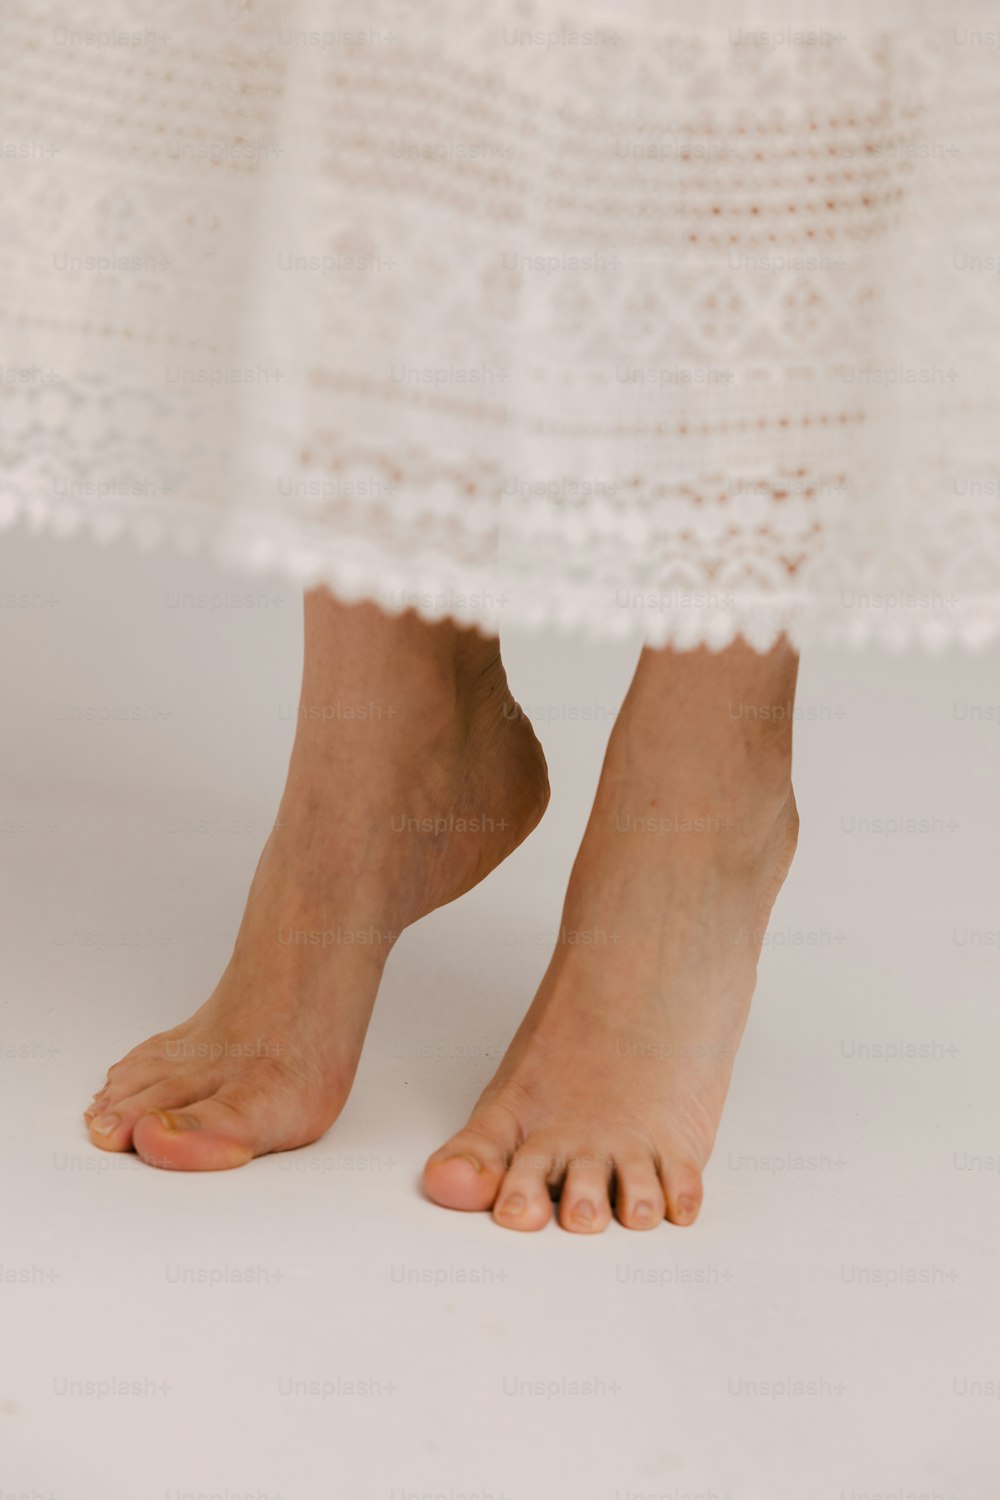 um close up dos pés descalços de uma pessoa usando um vestido branco